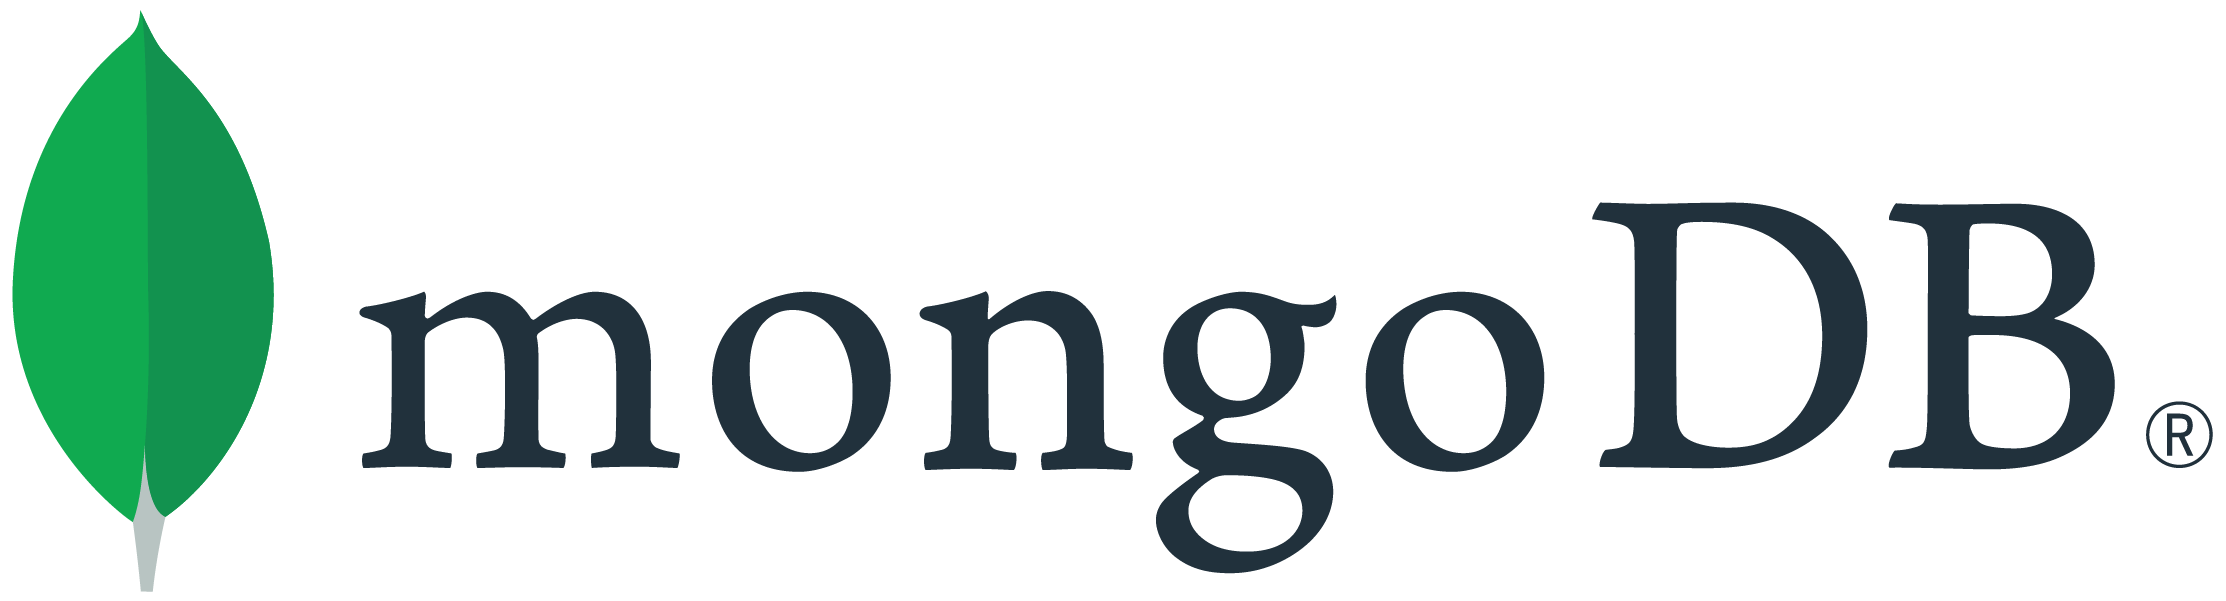 mongo development